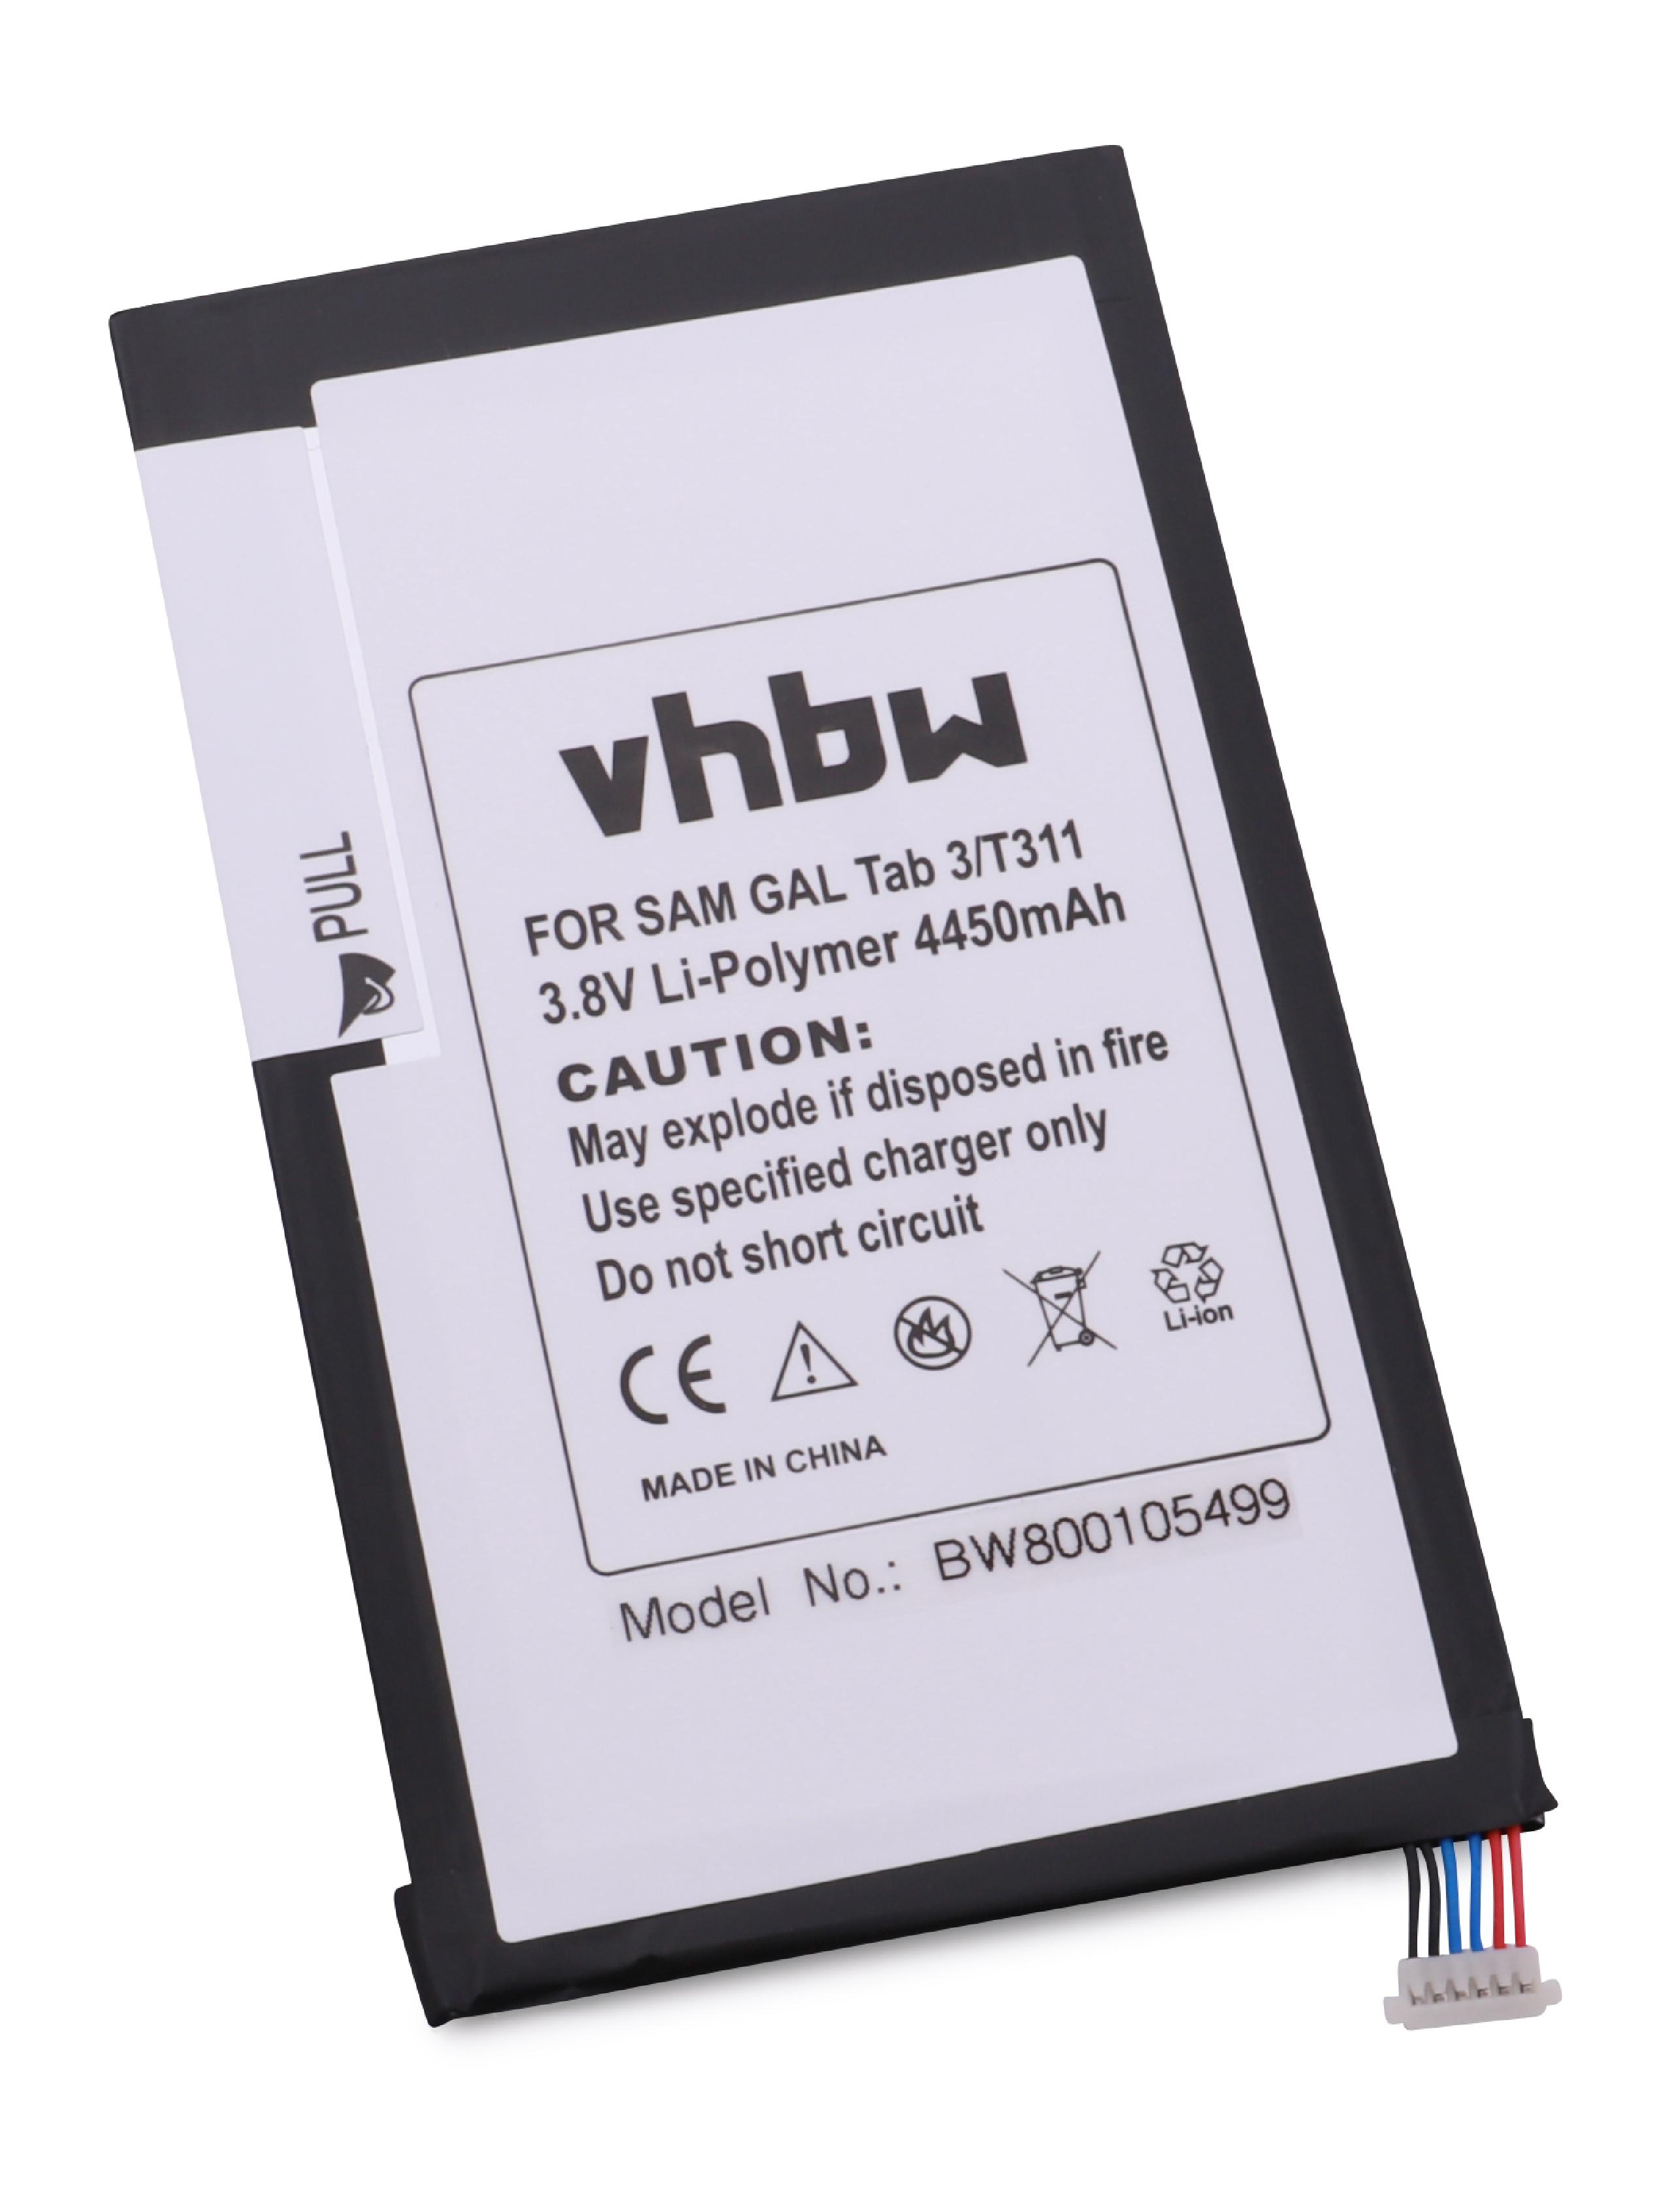 VHBW kompatibel mit Samsung Galaxy 3.8 SM-T315 Volt, Tablet, Li-Polymer Akku - 4450 Tab